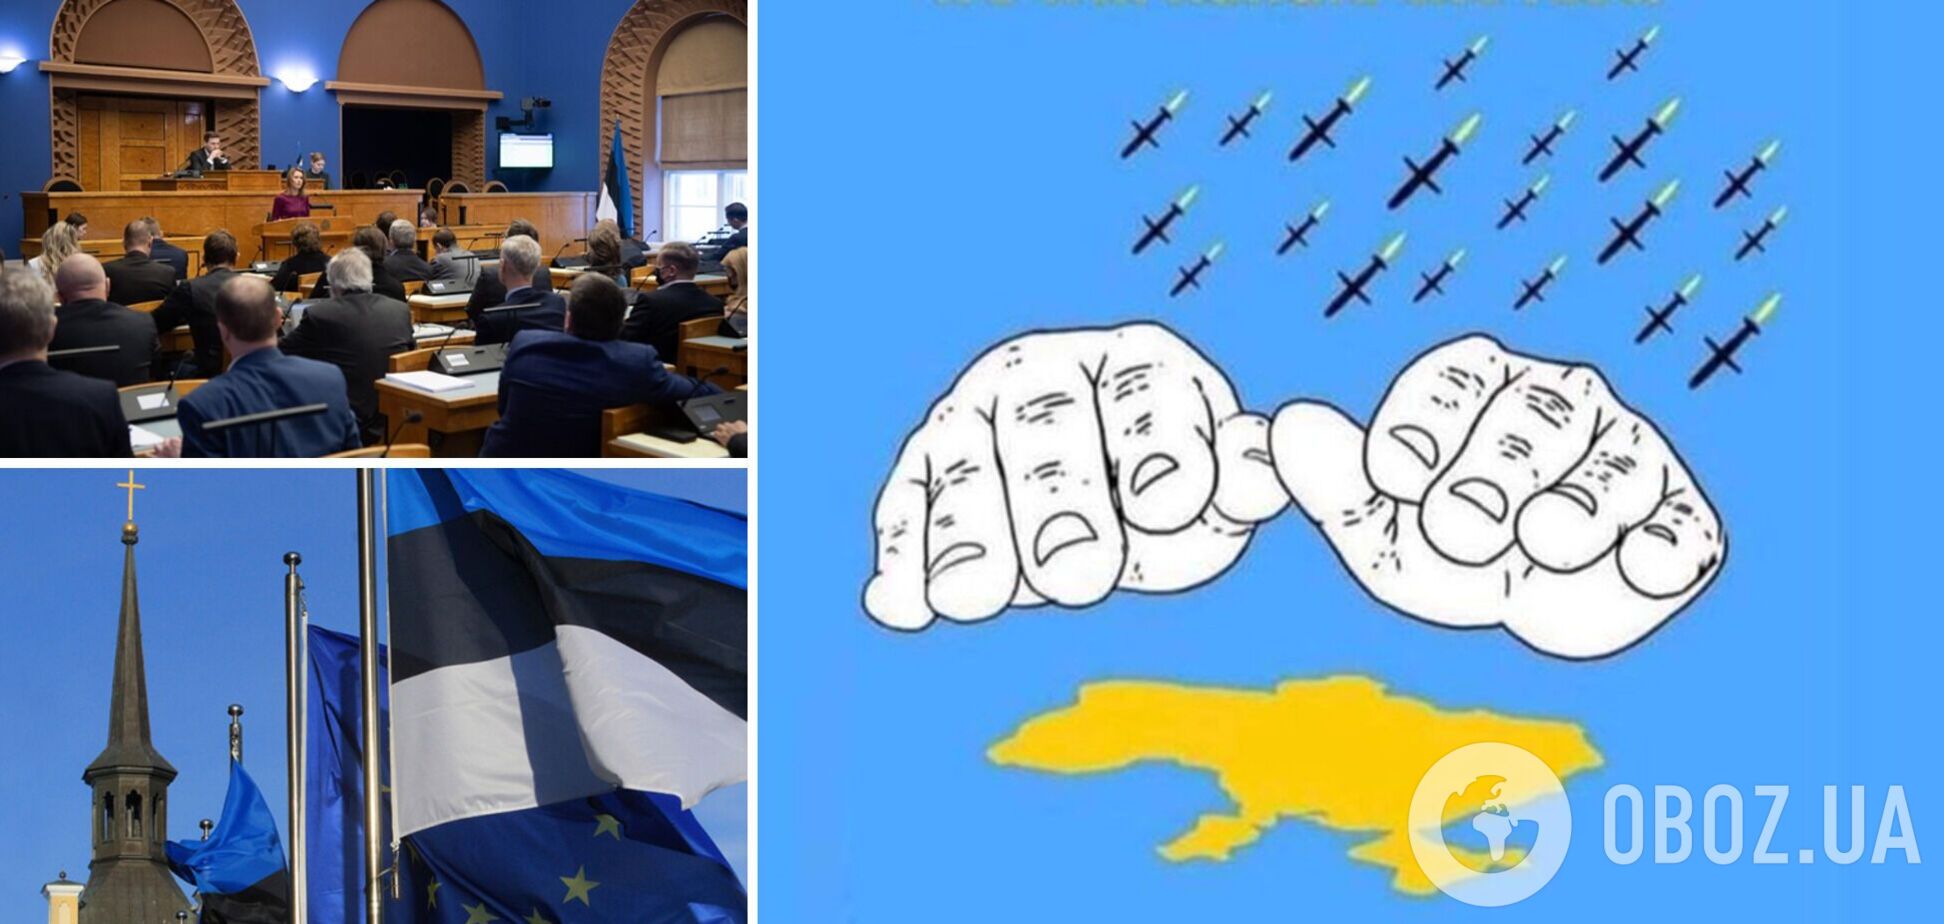 Парламент Эстонии призвал страны ООН закрыть небо над Украиной и ввести эмбарго на торговлю с РФ